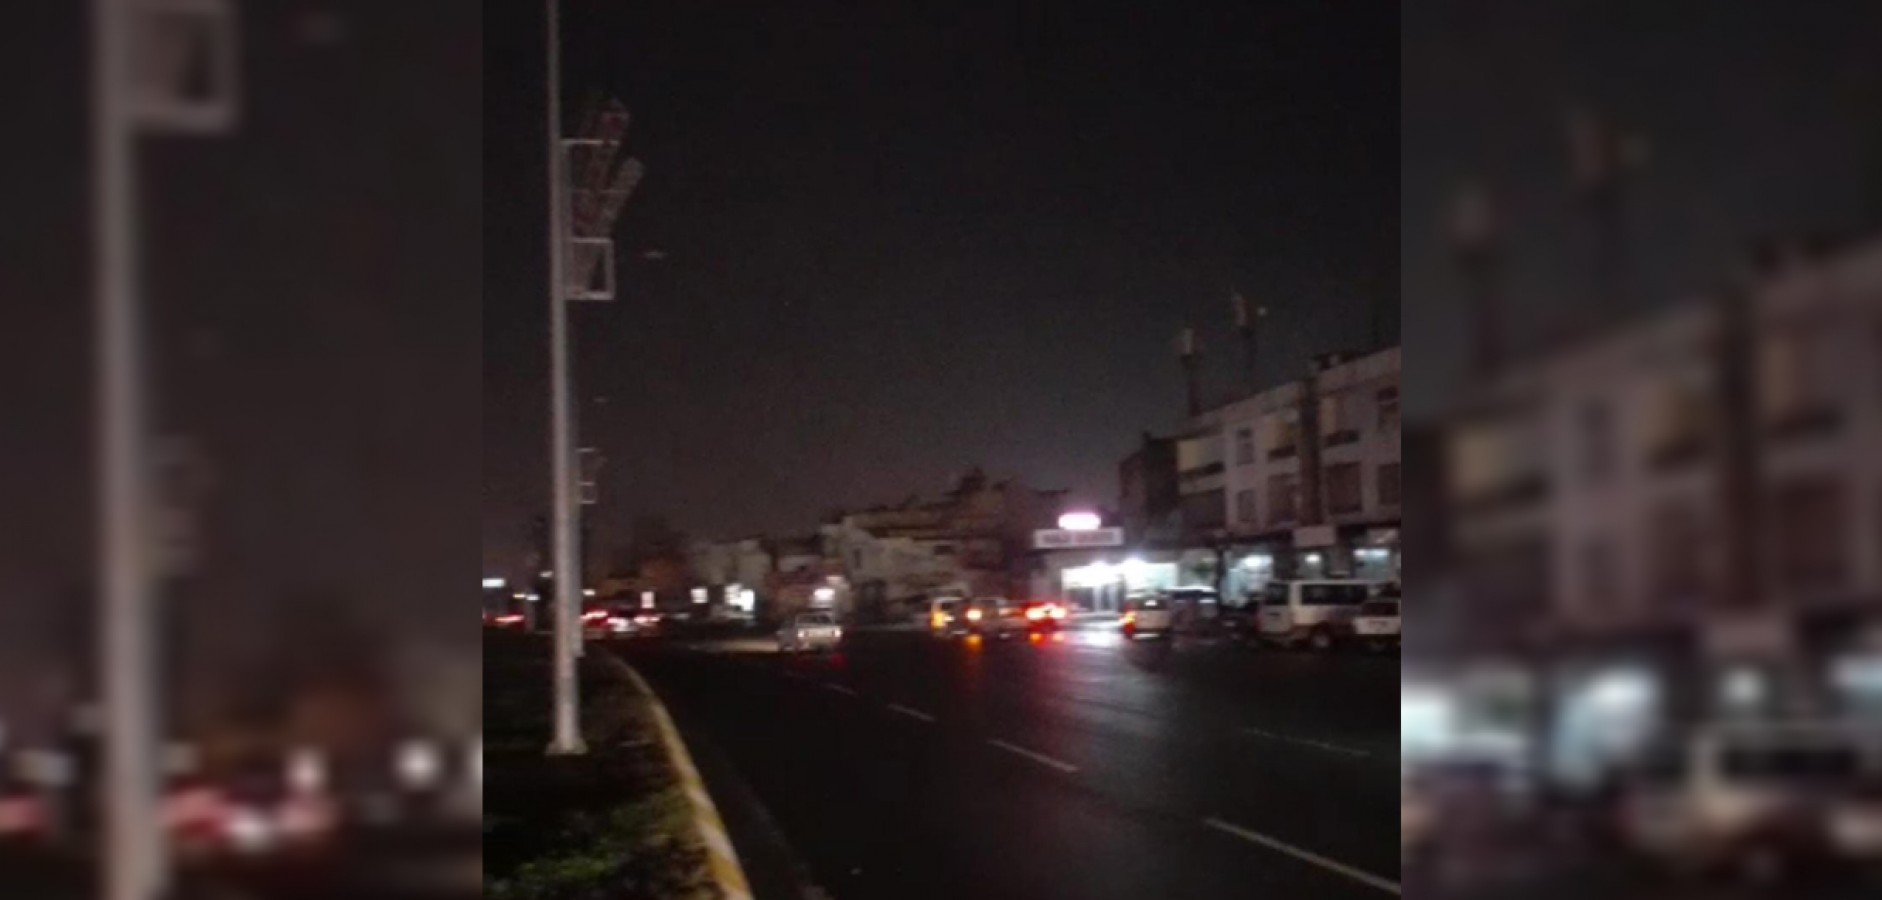 Urfa'da bir mahalle elektriksiz bırakıldı!;